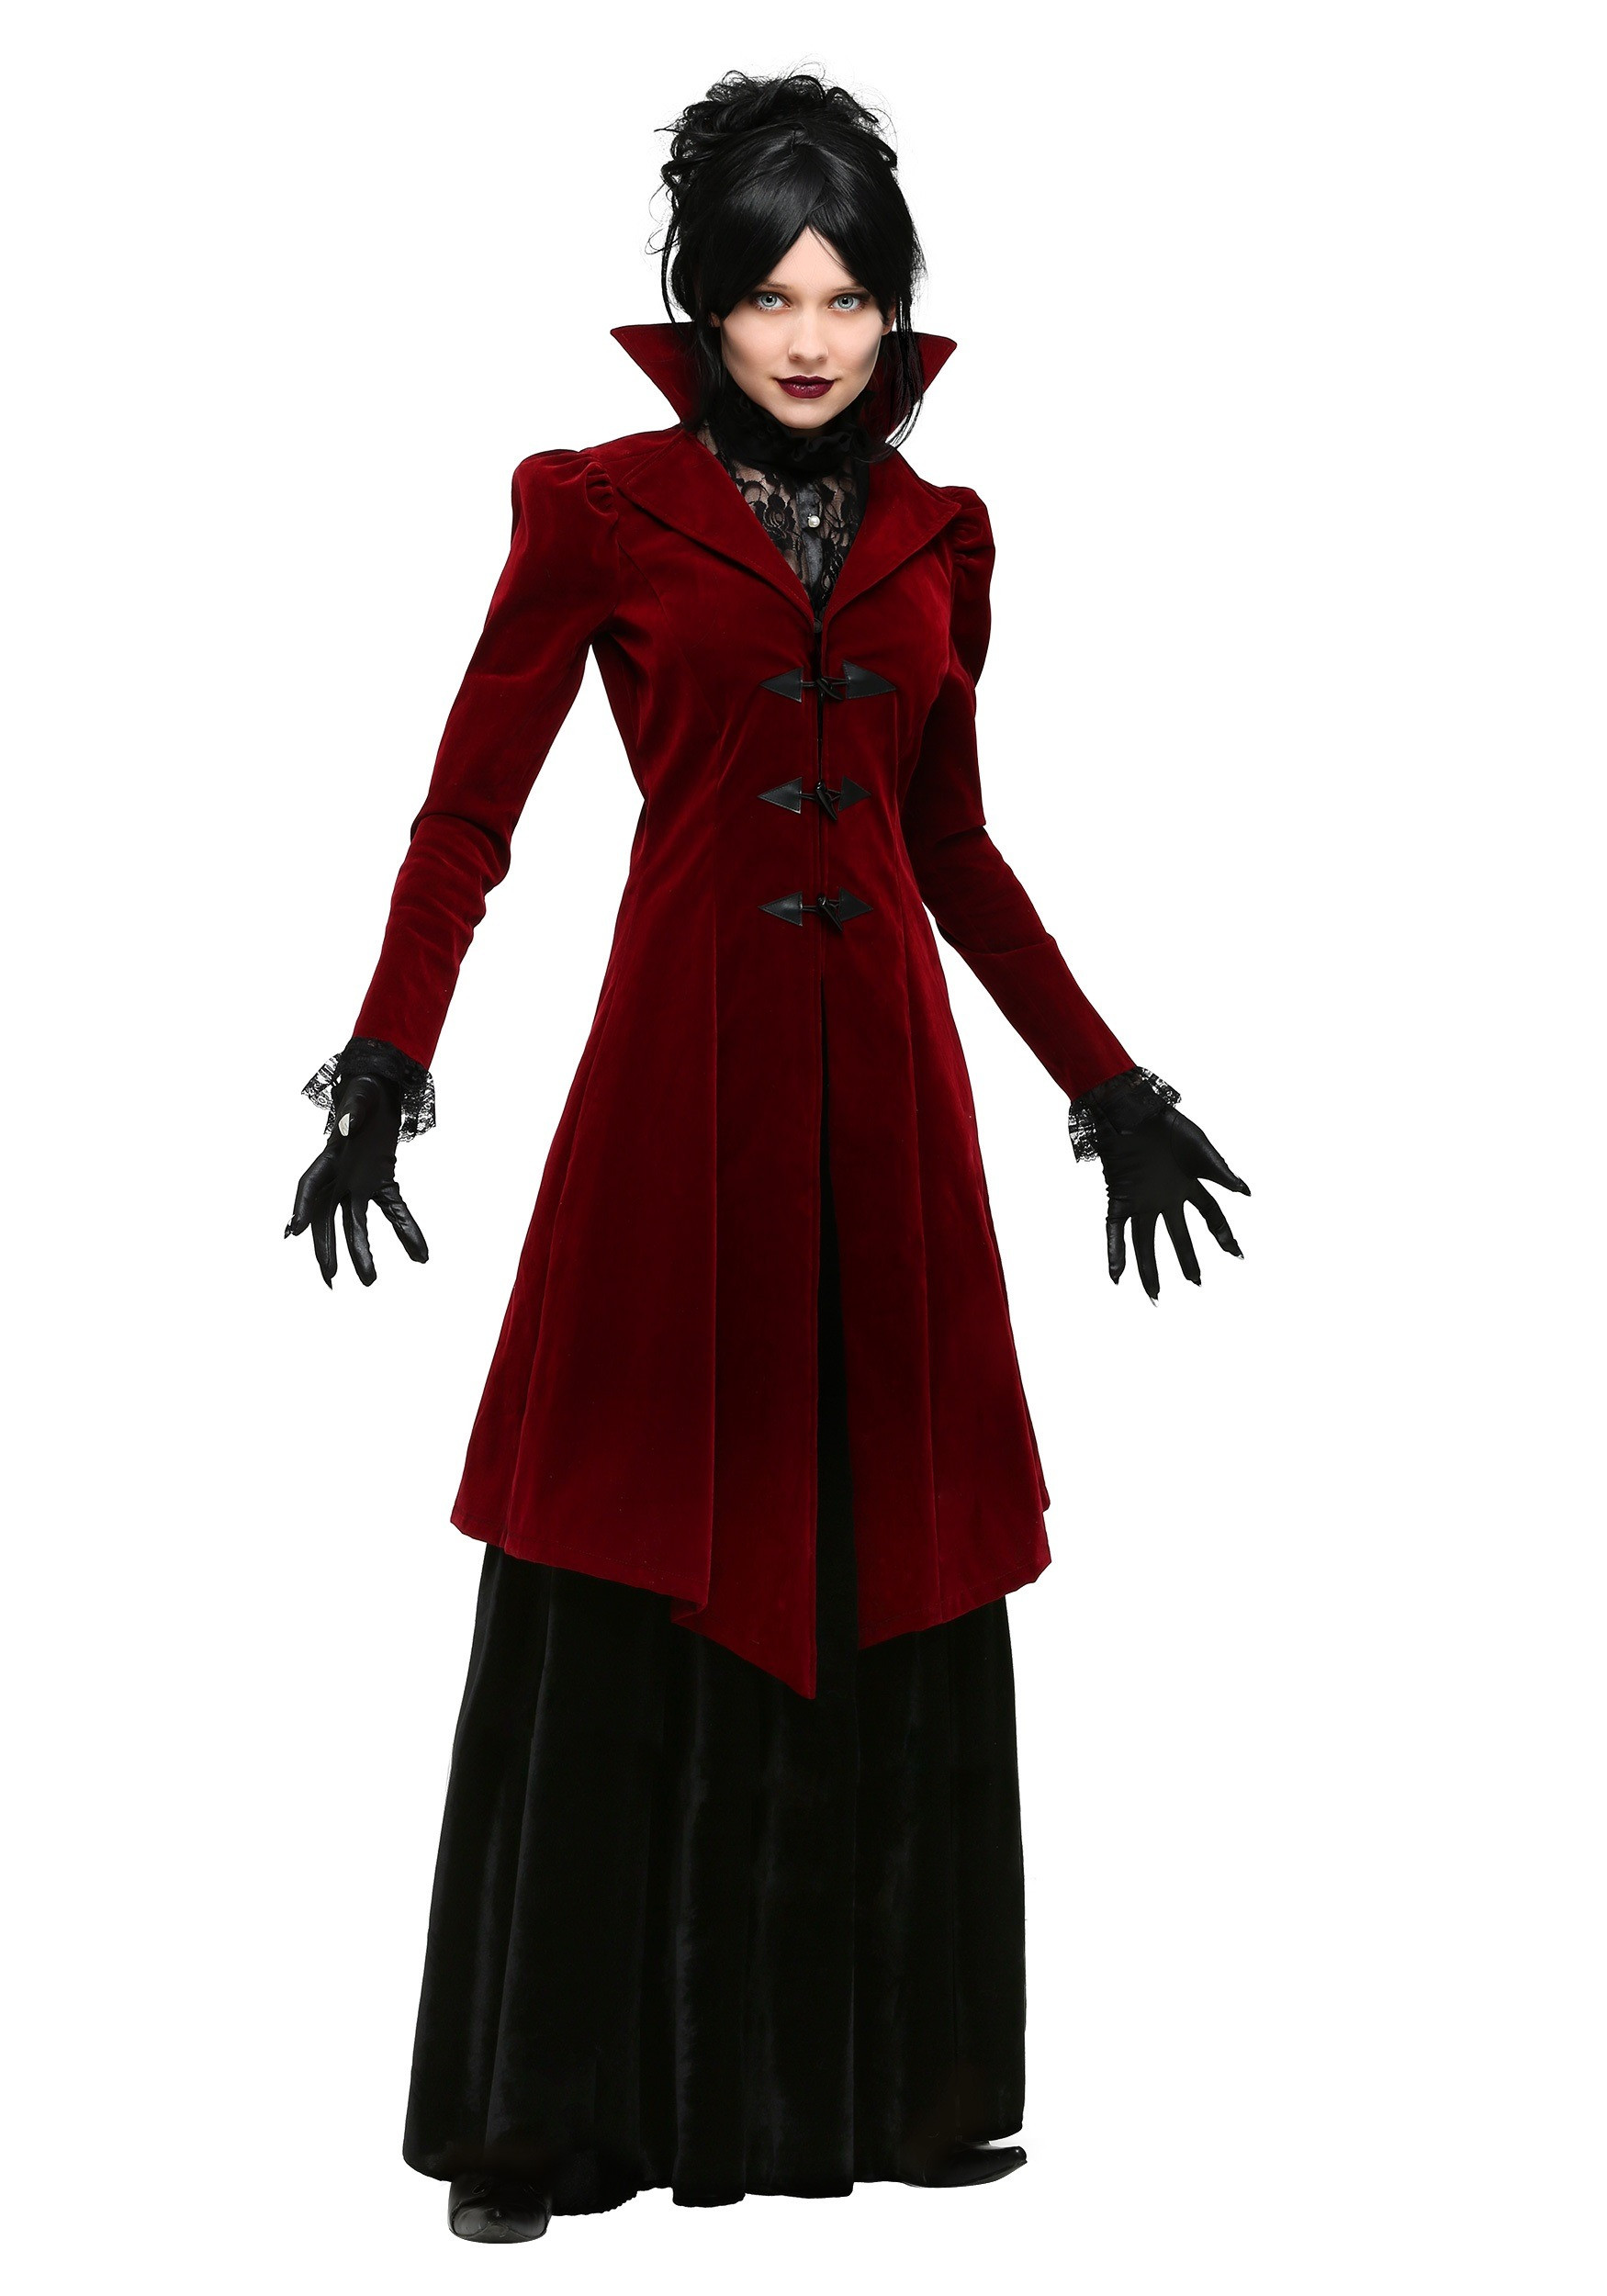 DIY Vampire Costume Female
 Plus Size Delightfully Dreadful Vampiress Costume for Women